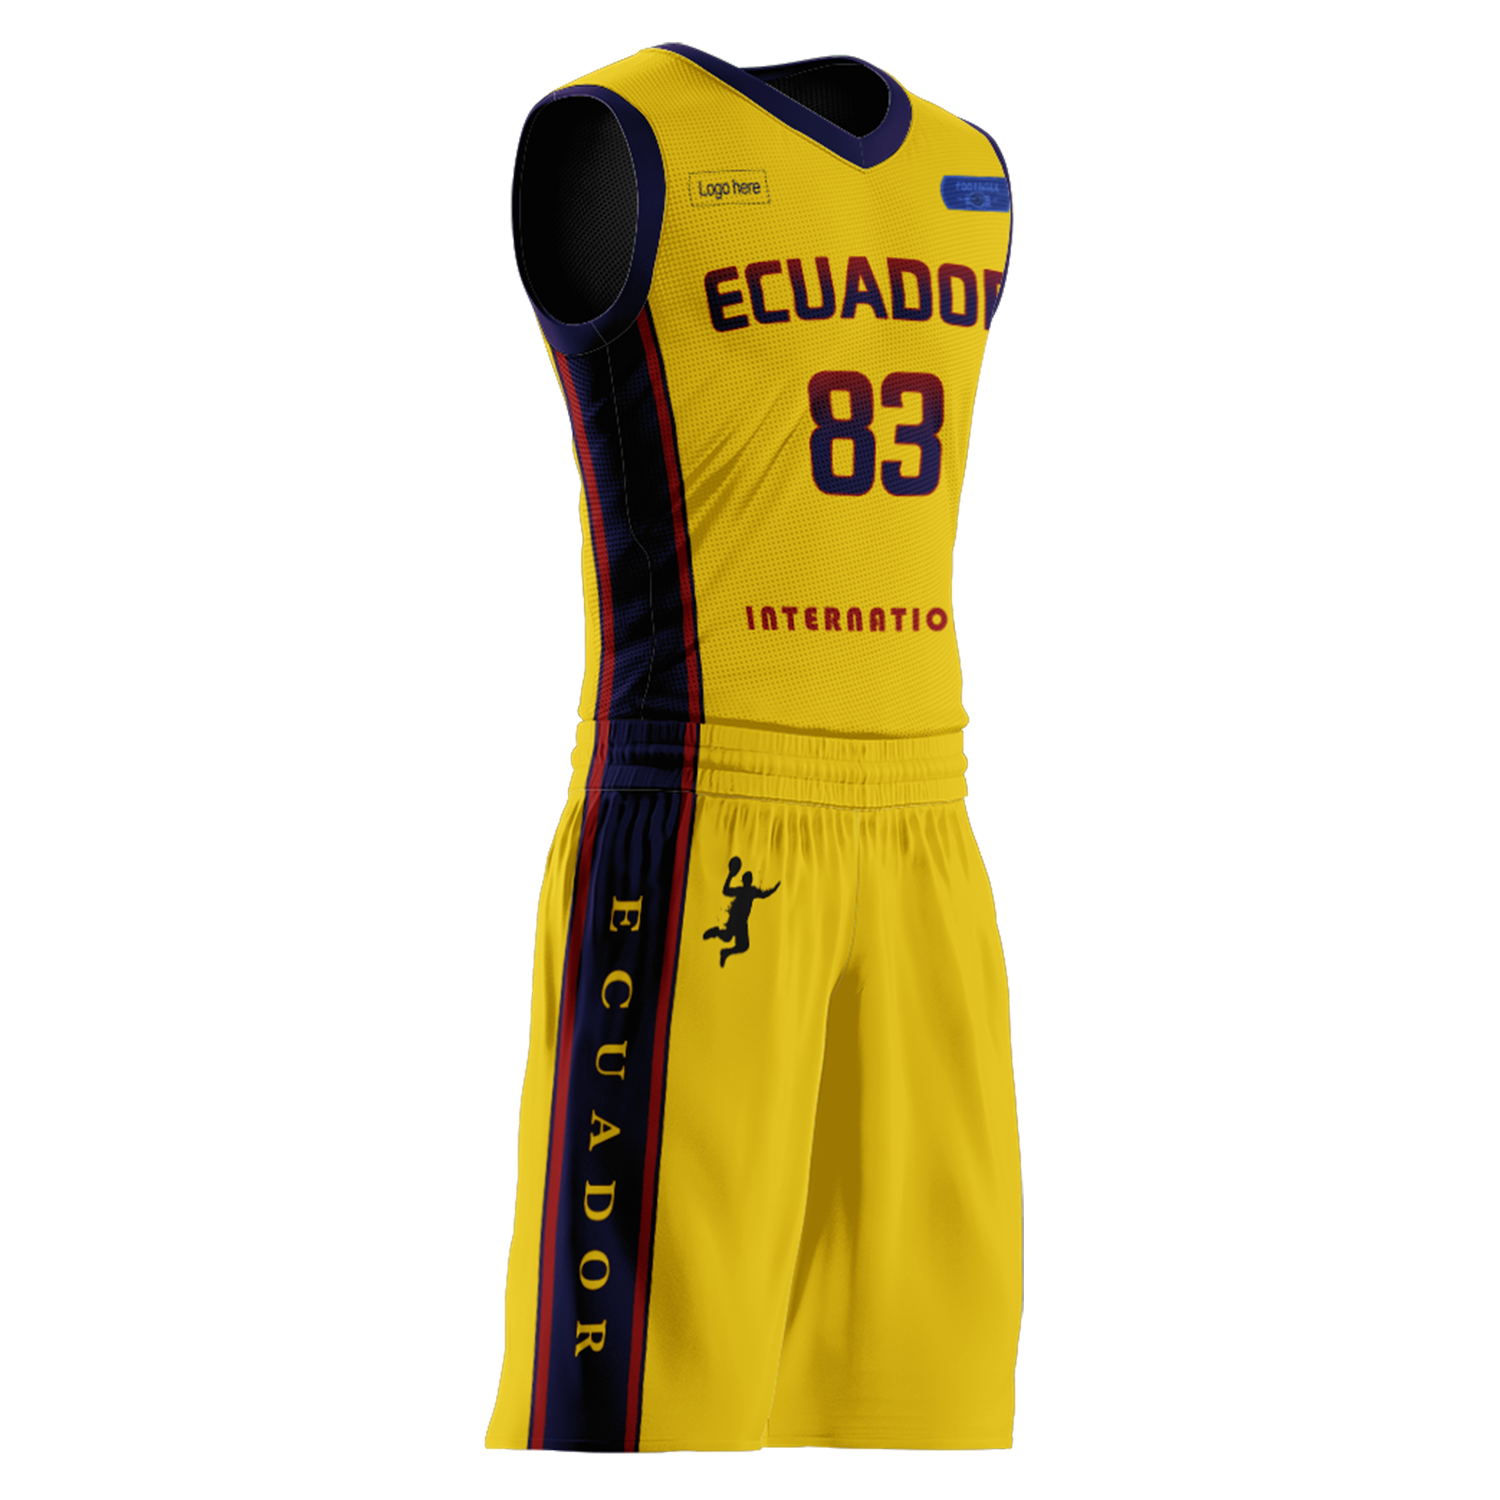 Kundenspezifische Ecuador-Team-Basketballanzüge